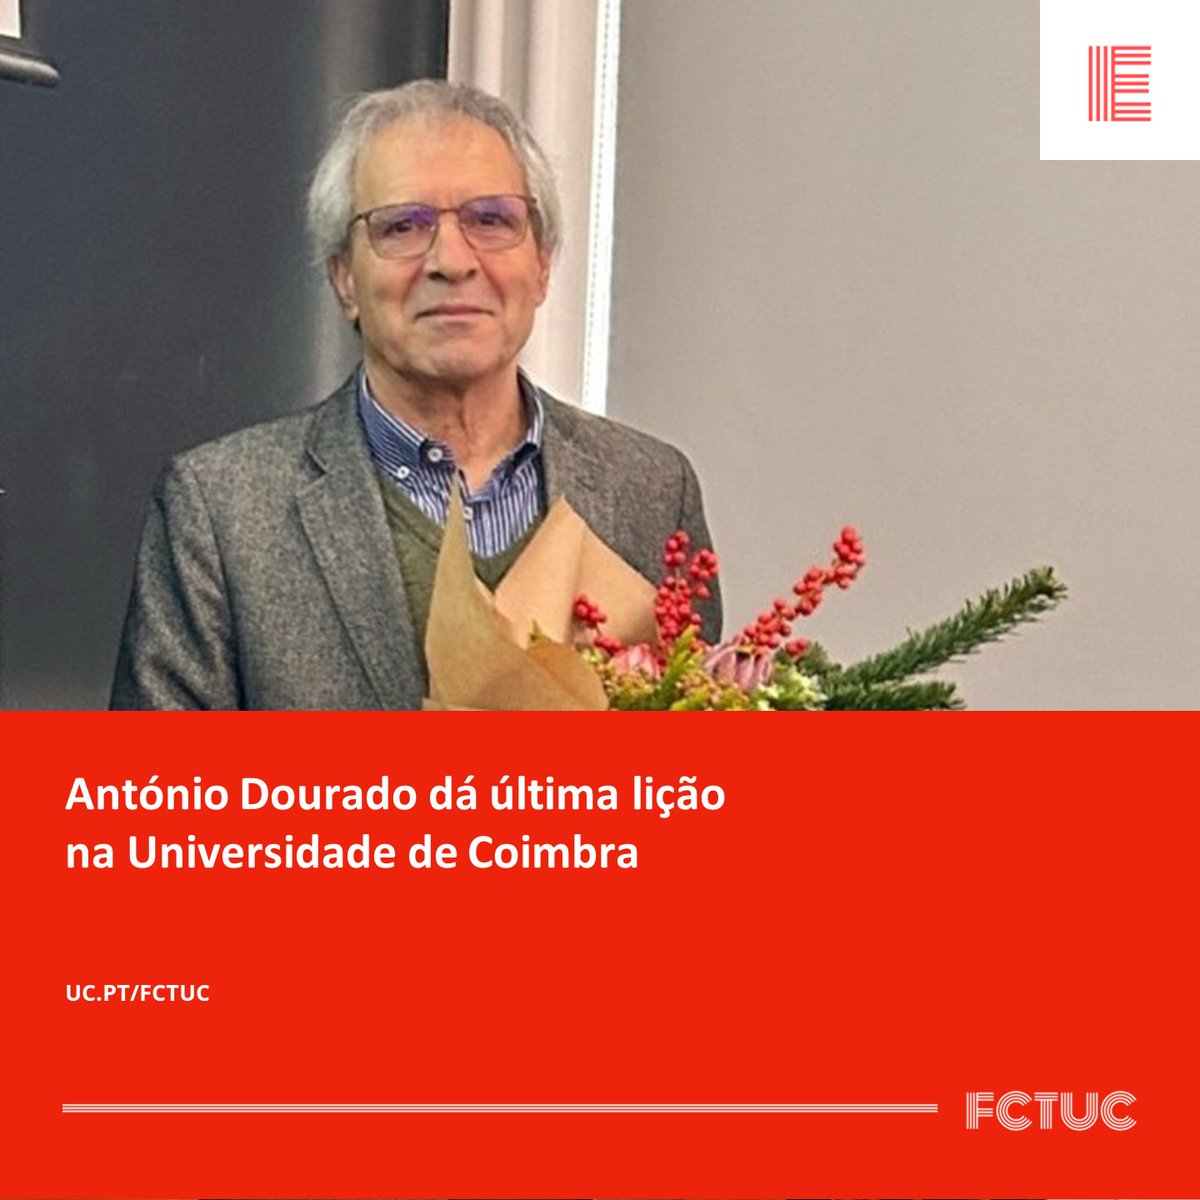 António Dourado dá última lição na Universidade de Coimbra. Mais informações no nosso site: uc.pt/fctuc/noticias…